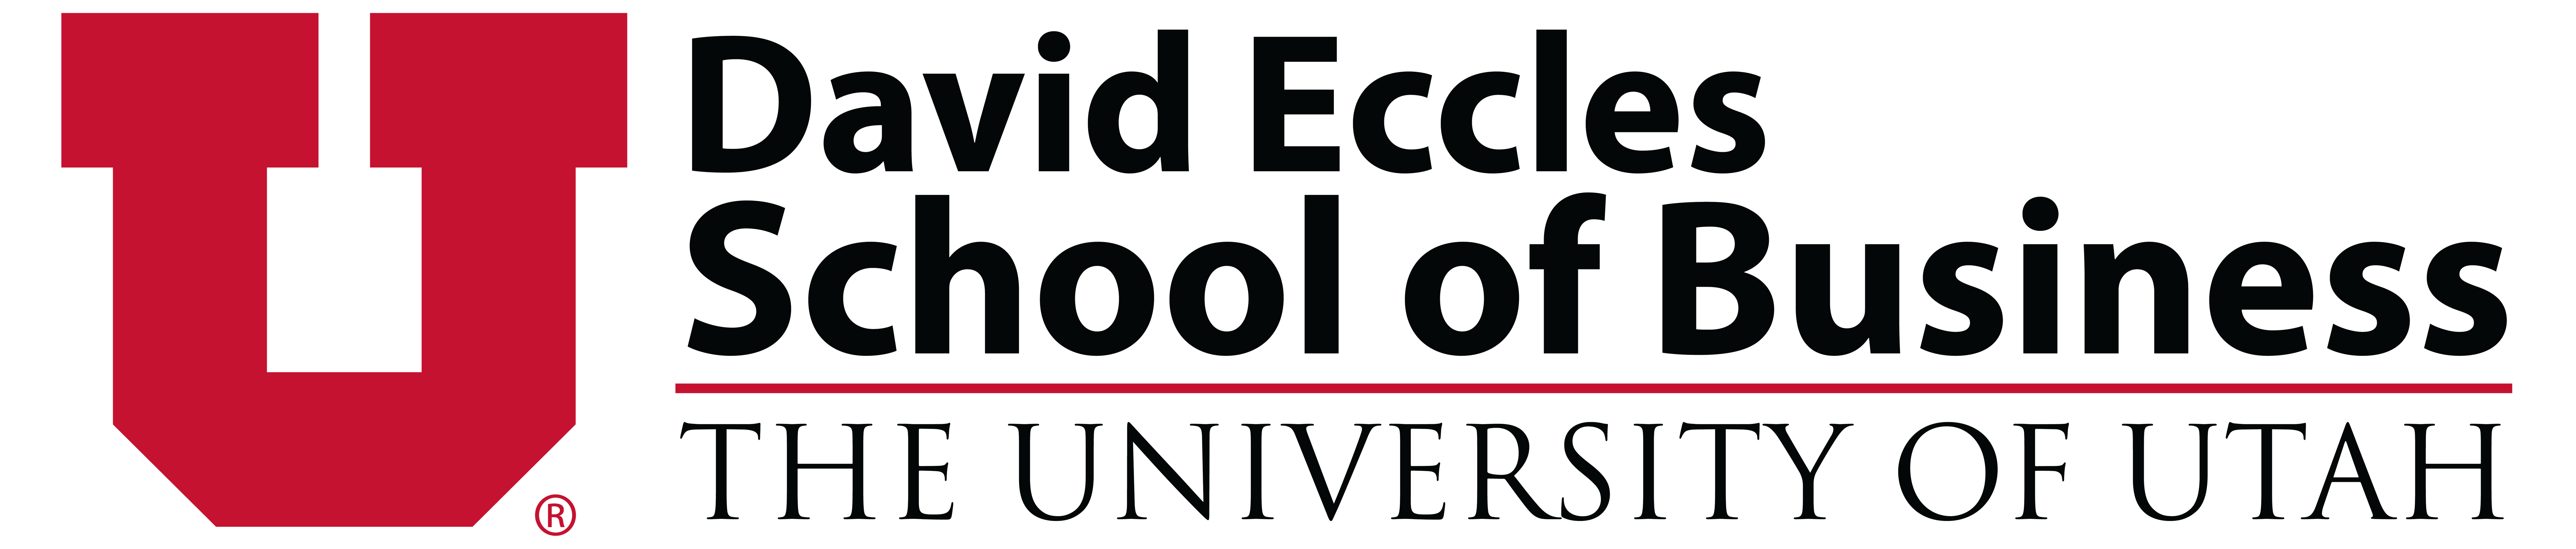 David Eccle School of Business